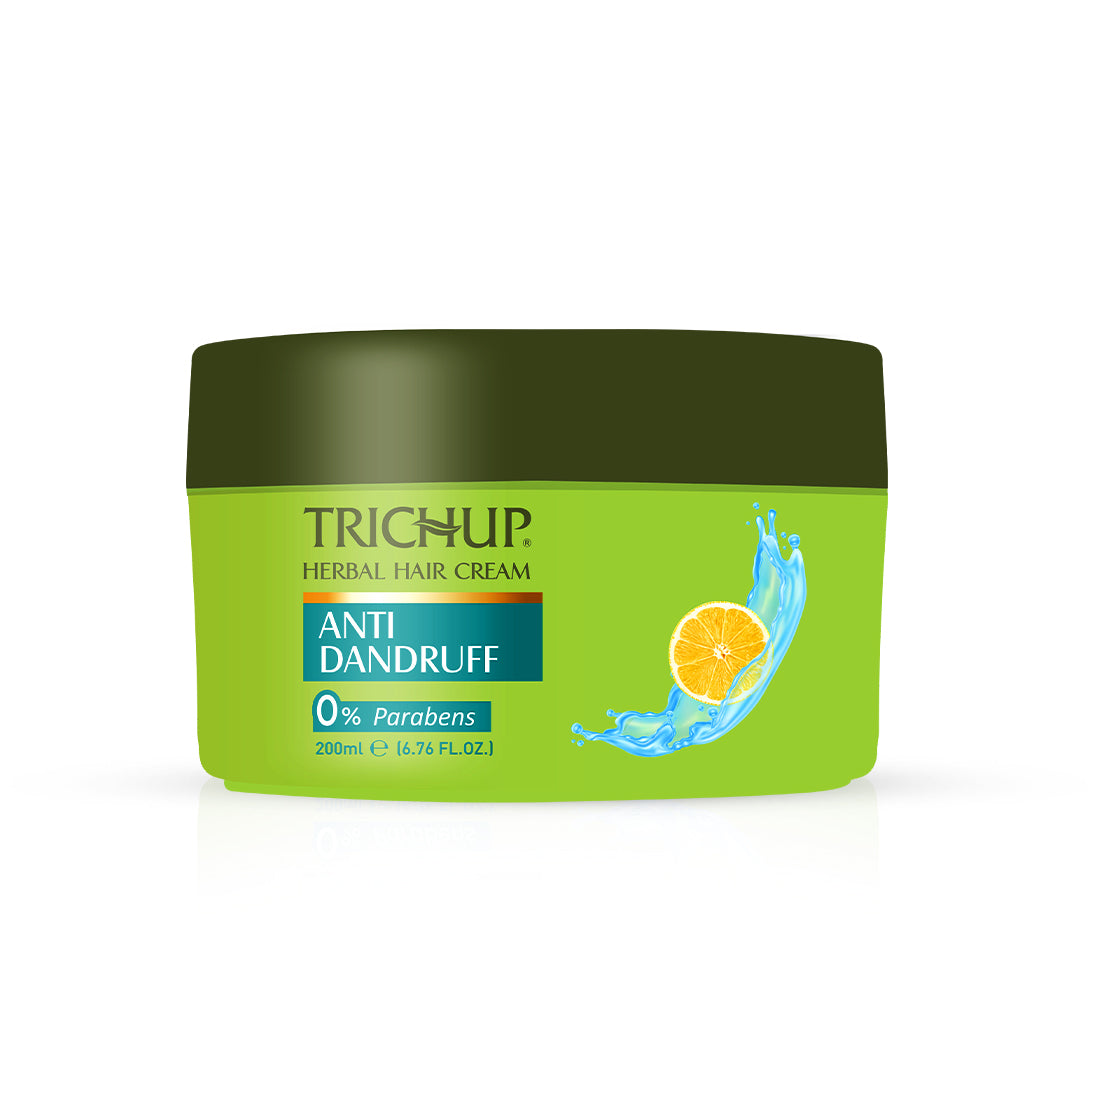 Trichup Anti Dandruff Hair Cream - VasuStore